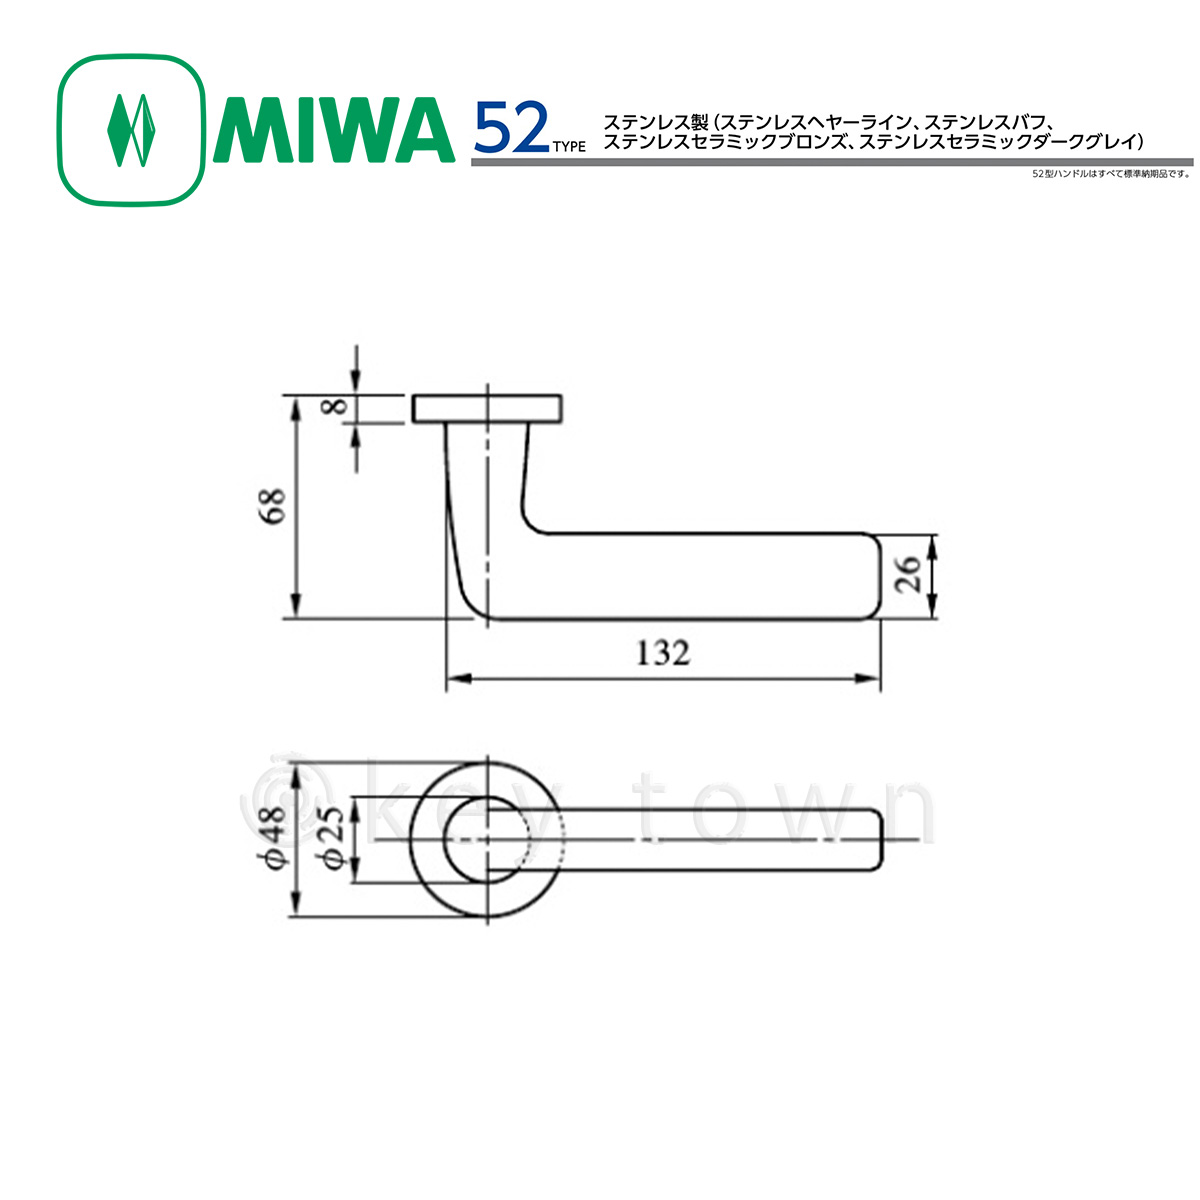 MIWA 【美和ロック】 ハンドル [MIWA-52] 交換用 ステンレス製[MIWA 52 